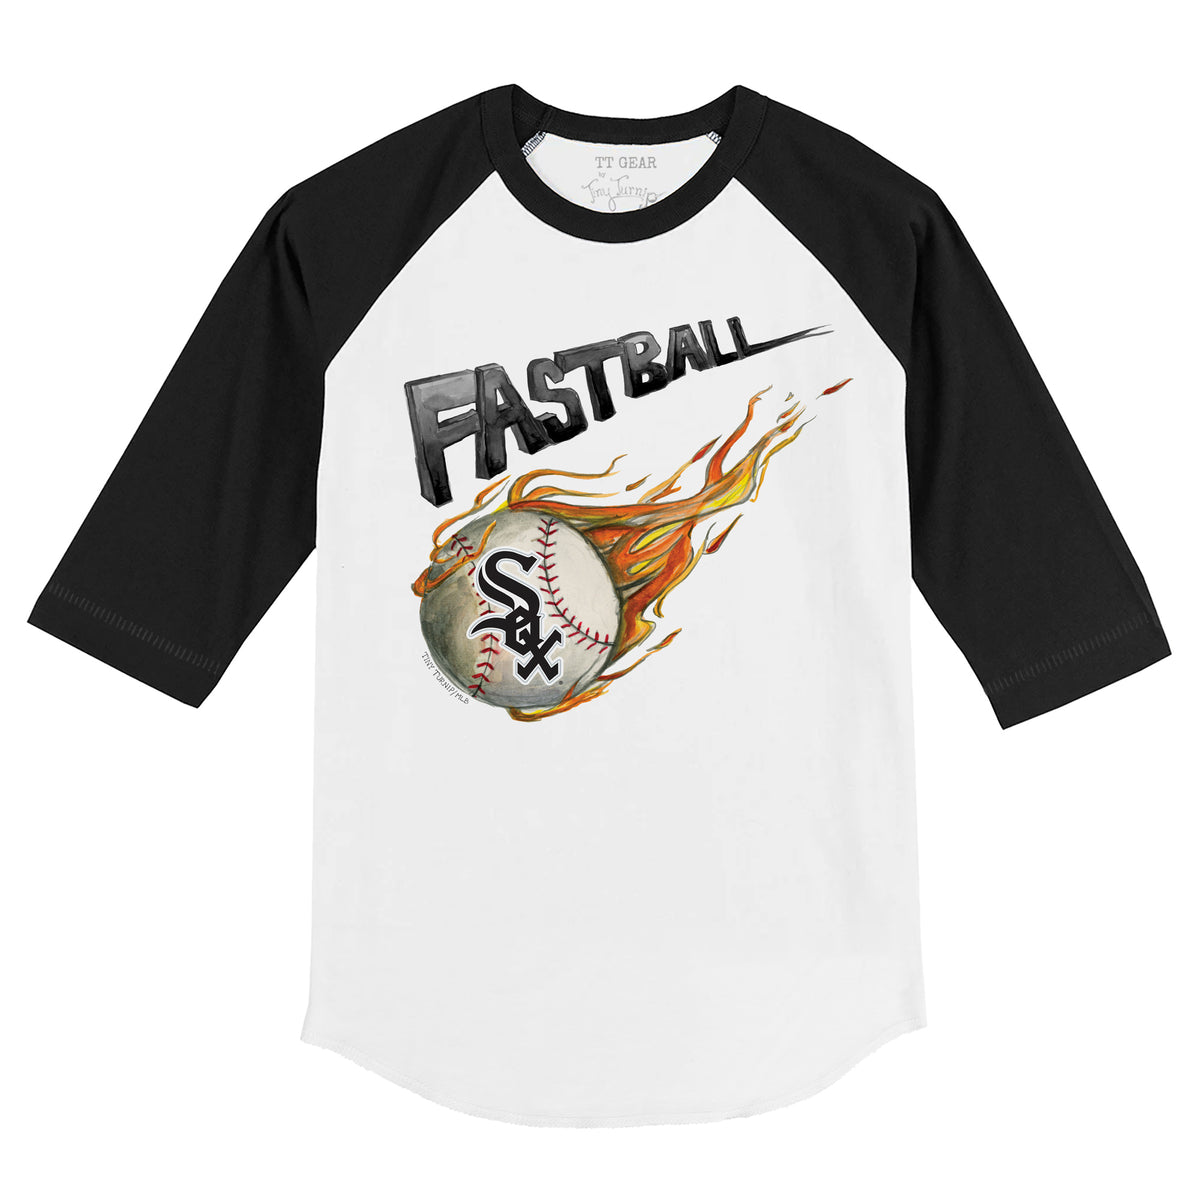 Youth Tiny Turnip White Chicago Sox Baseball Bow T-Shirt Size: Large